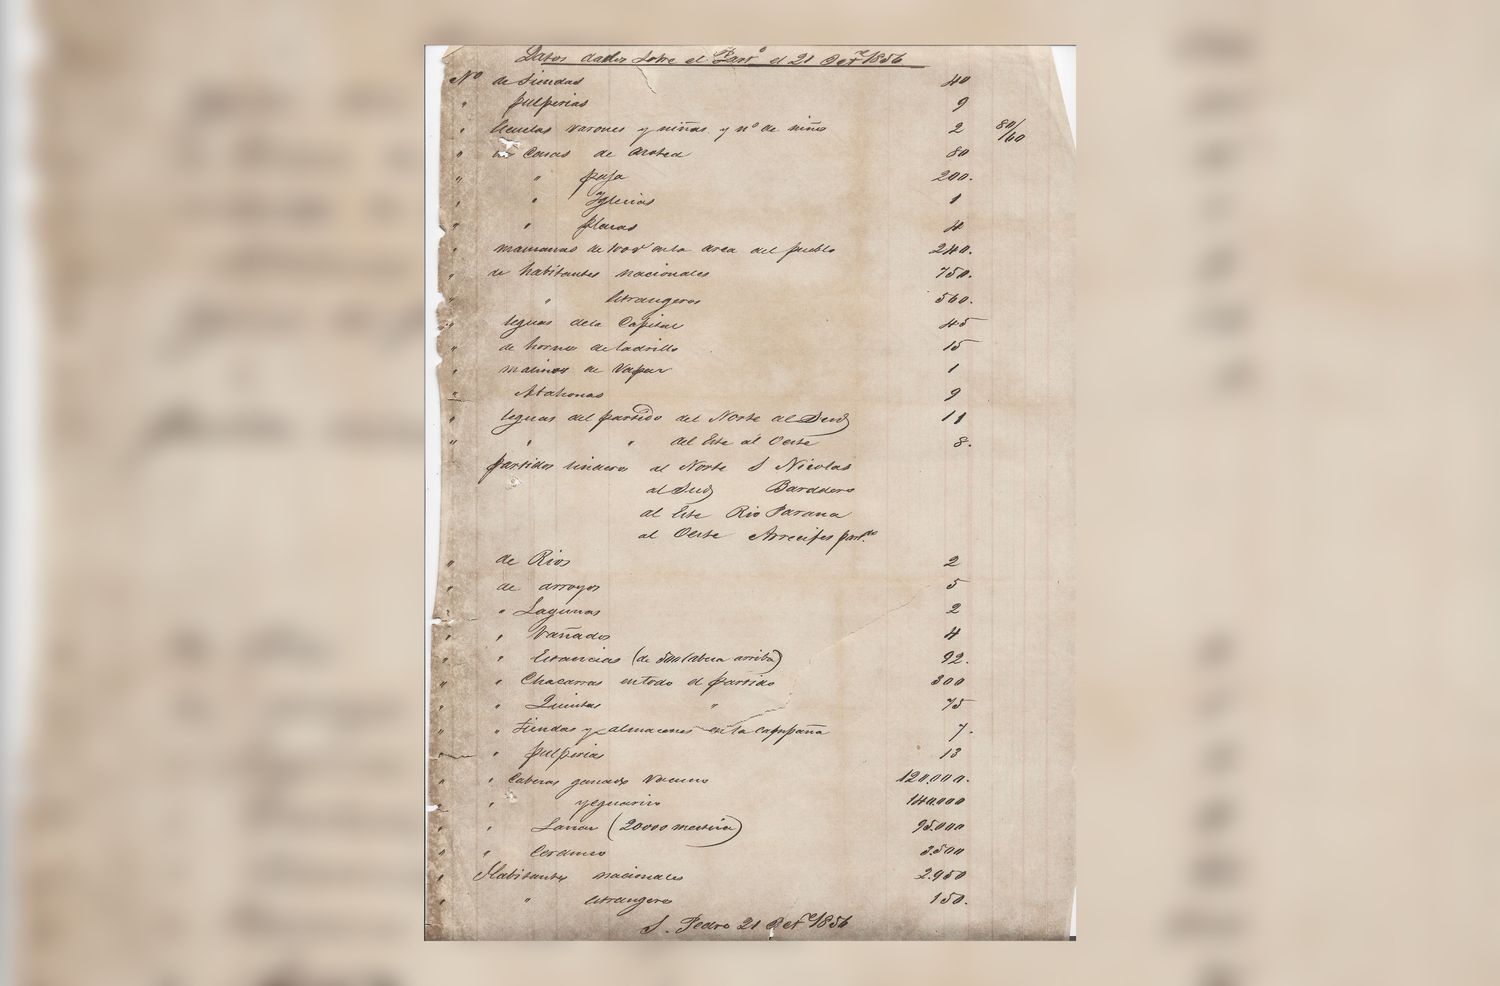 El documento que encontró el Grupo Conservacionista es de 1856